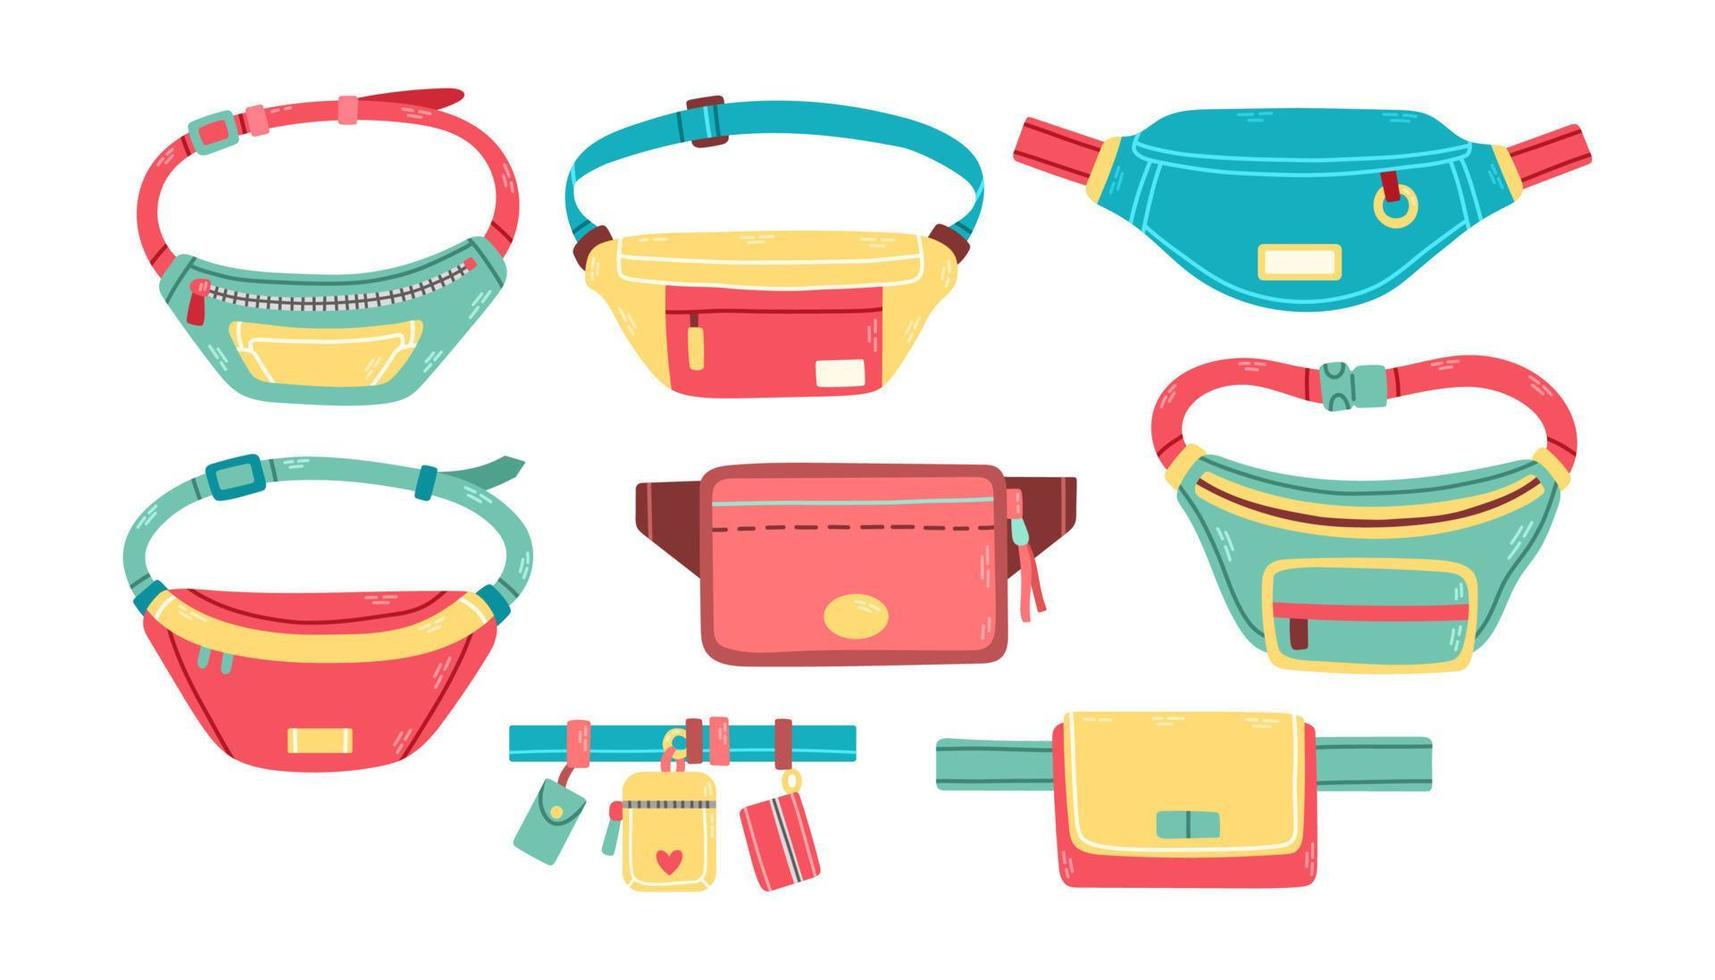 di moda vita borse impostato di diverso forma e colore unisex elementi con cerniere lampo isolato vettore illustrazione